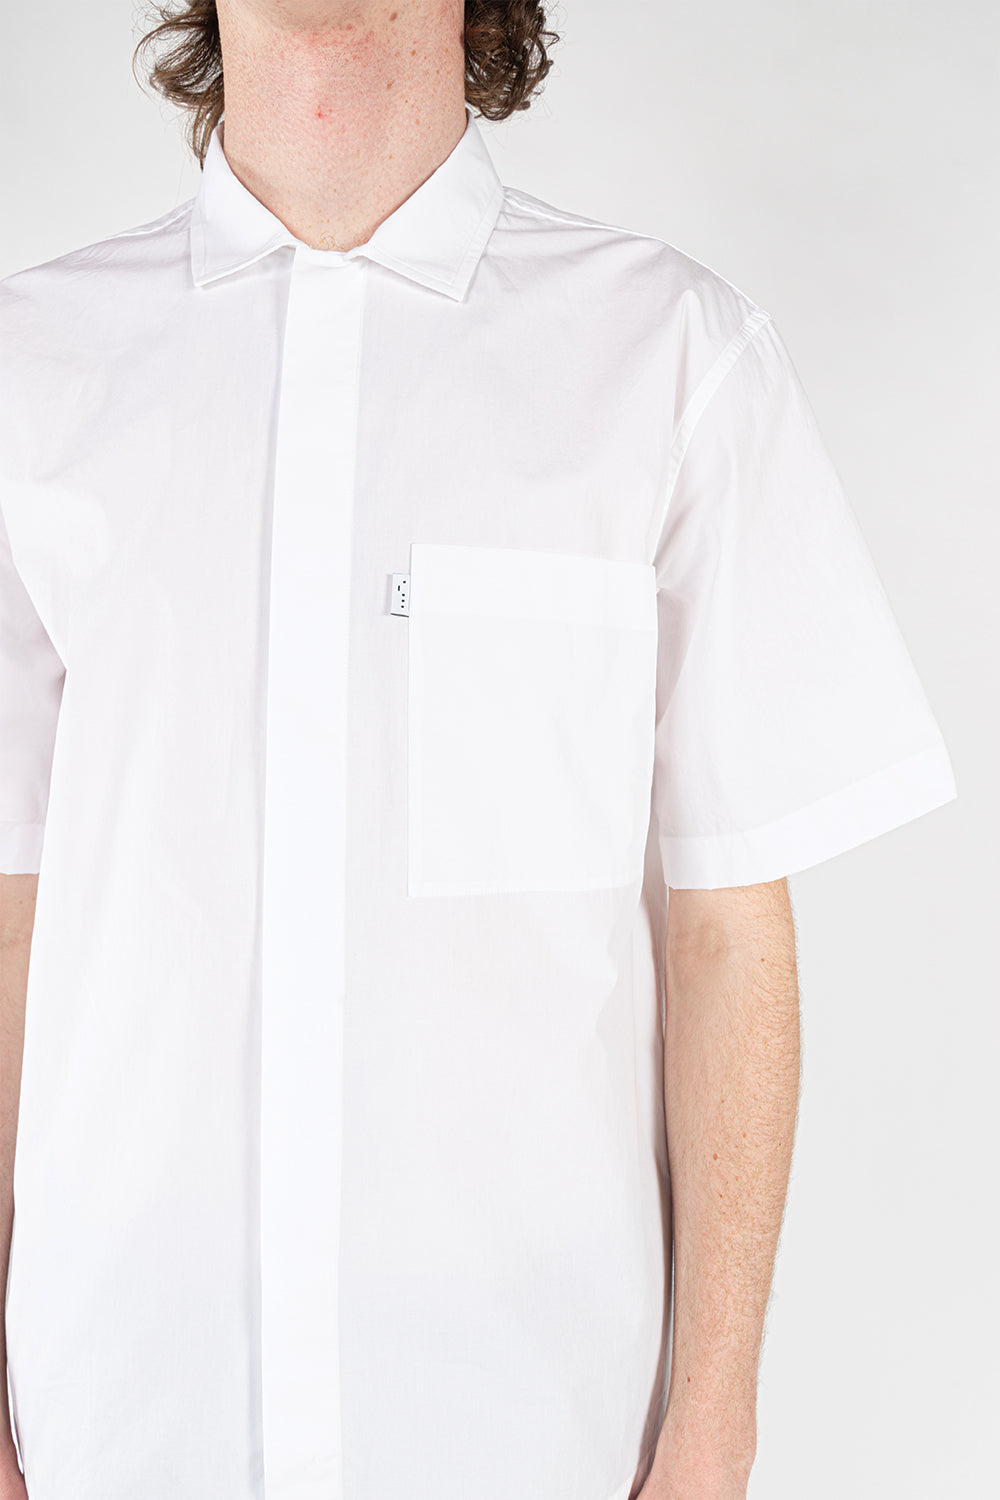 studio-nicholson-zanza-shirt-white